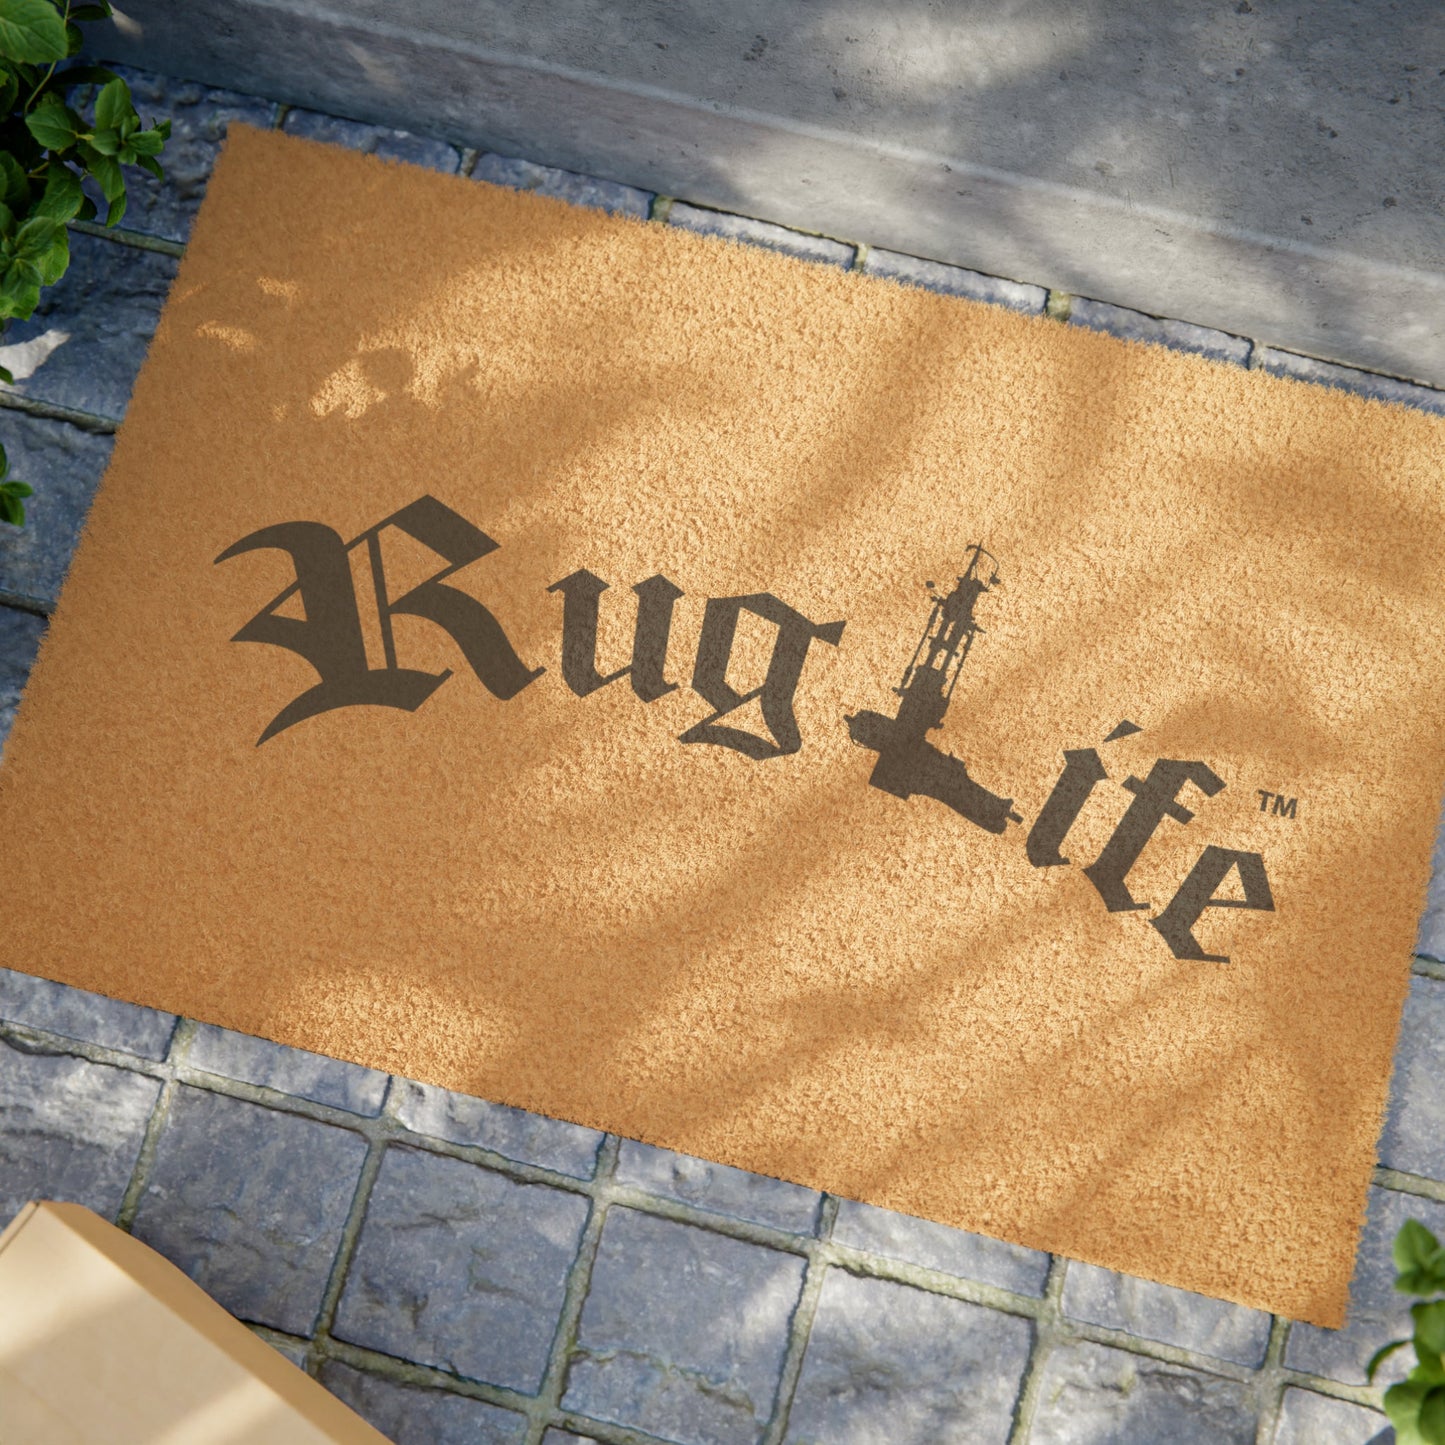 RugLife Tufted Doormat - MyTuftedRugs.com